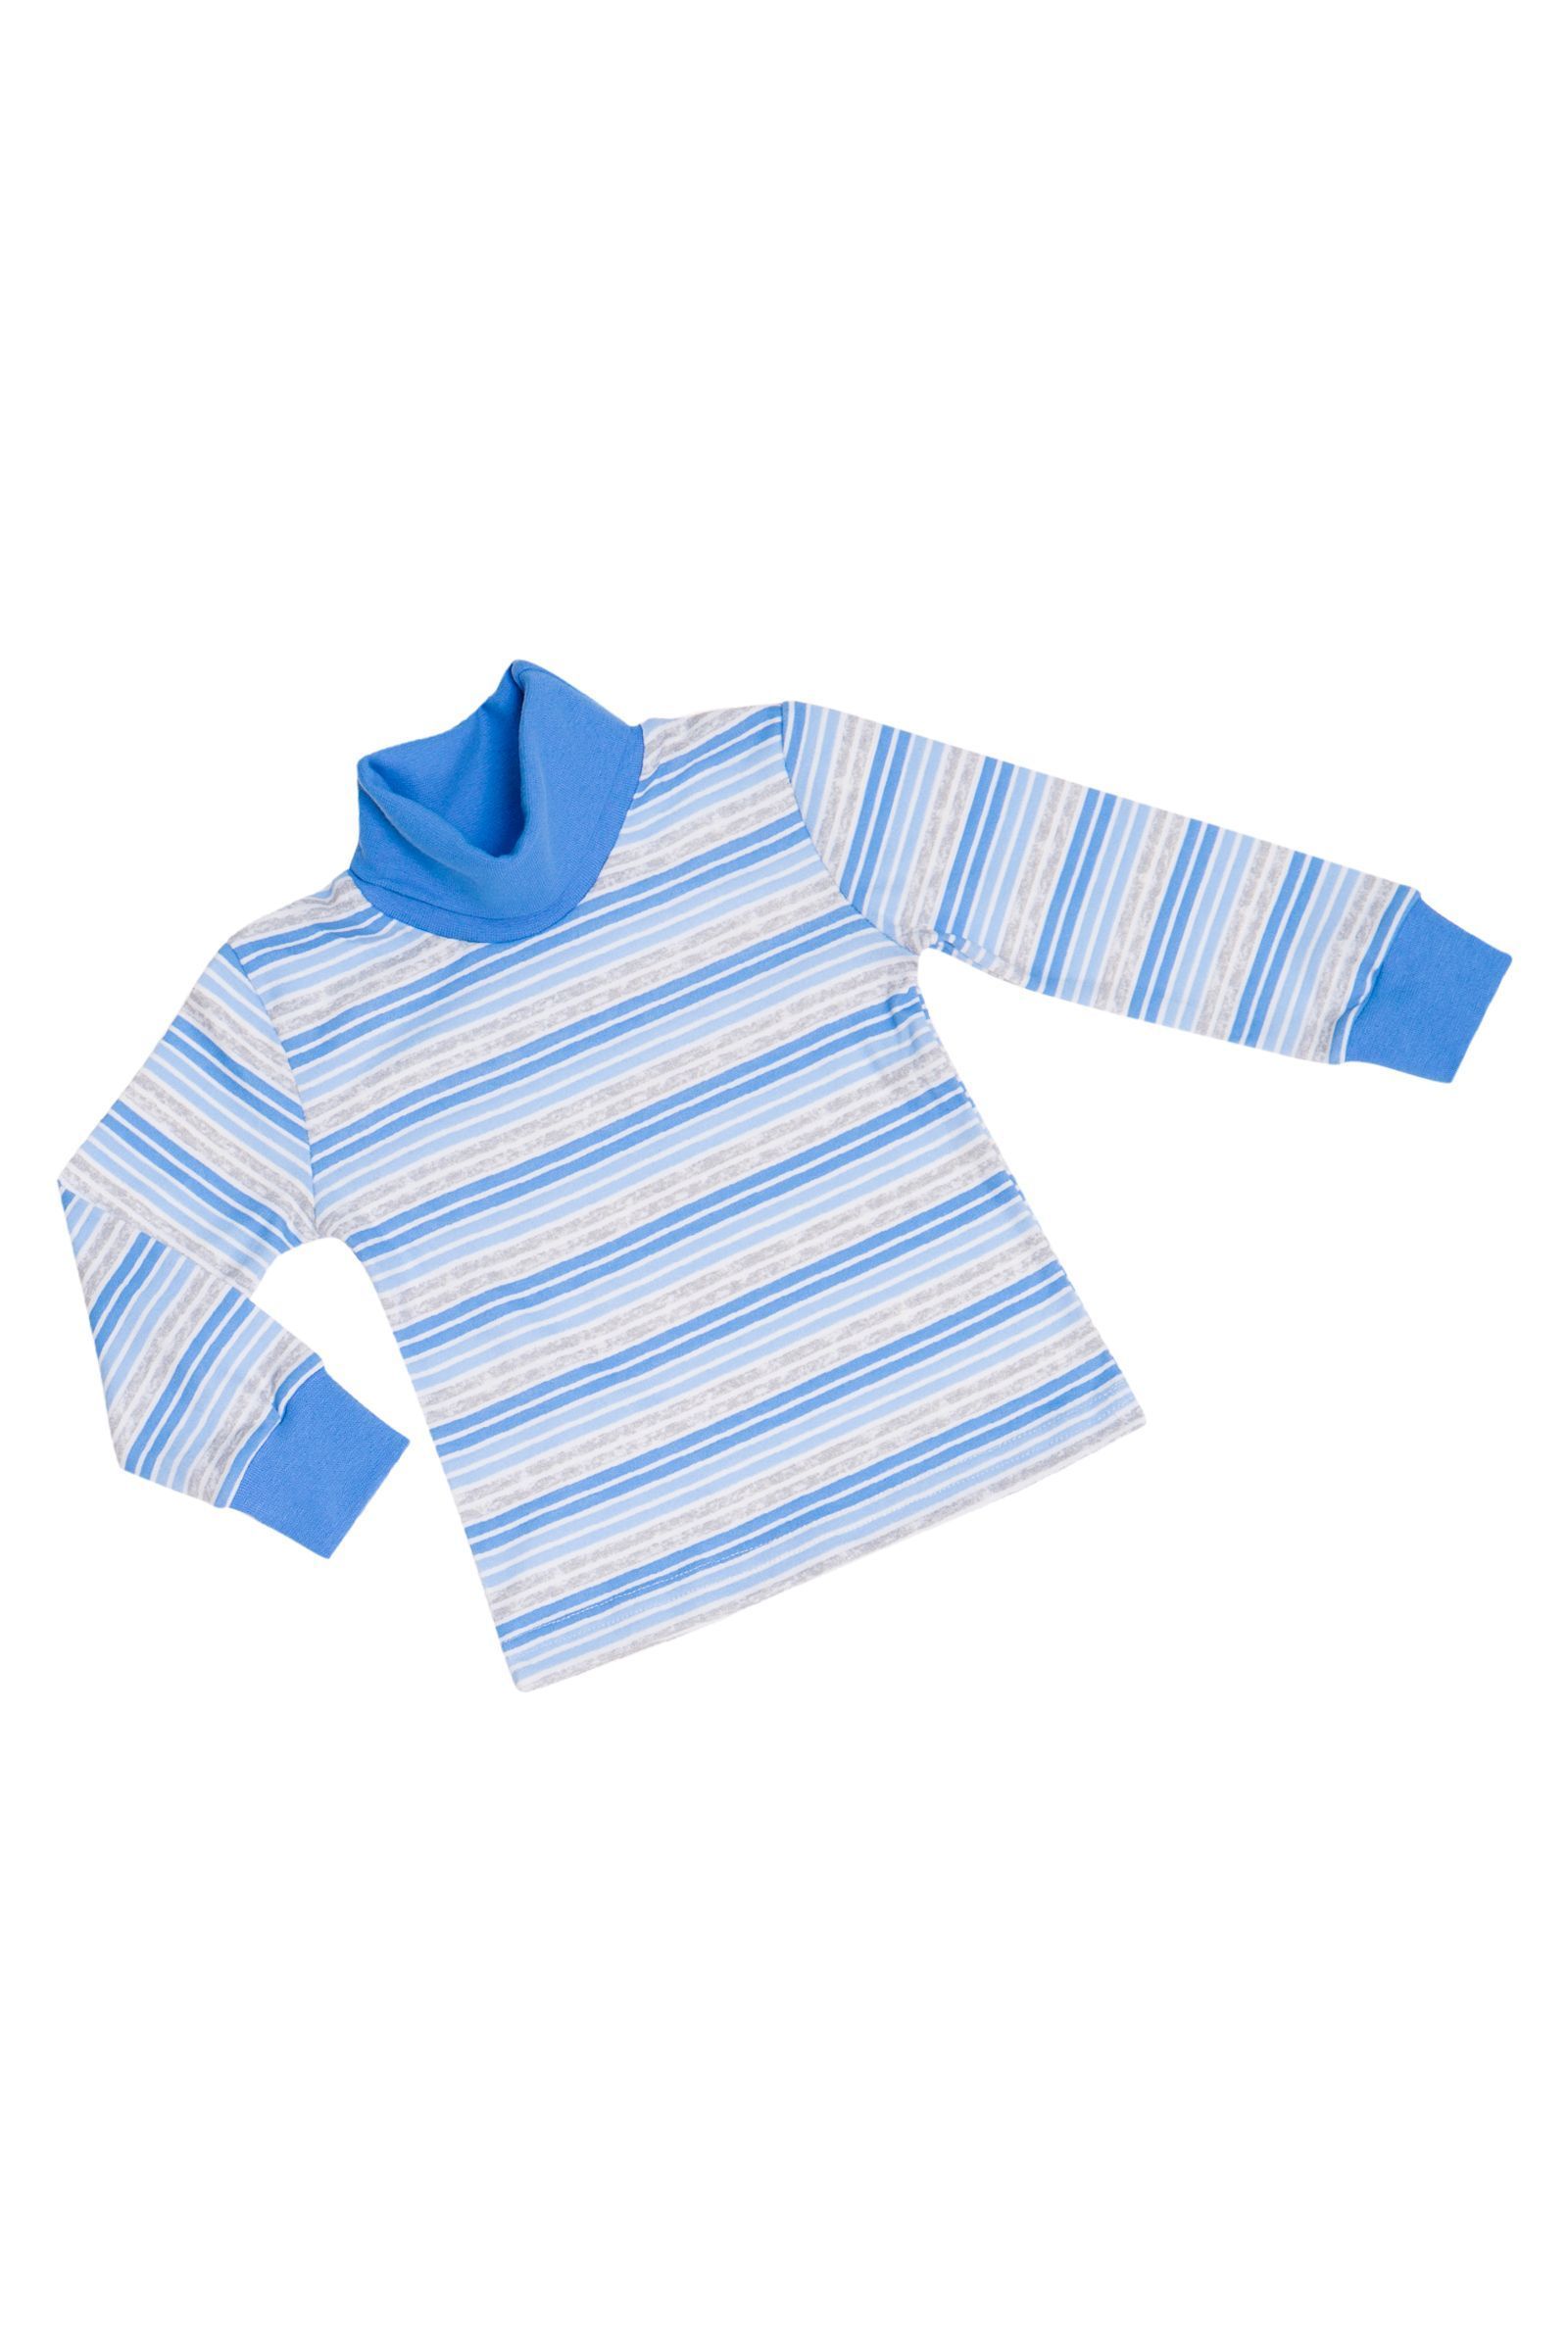 Водолазка-ДЖ01-3021 оптом от производителя детской одежды 'Алёна'